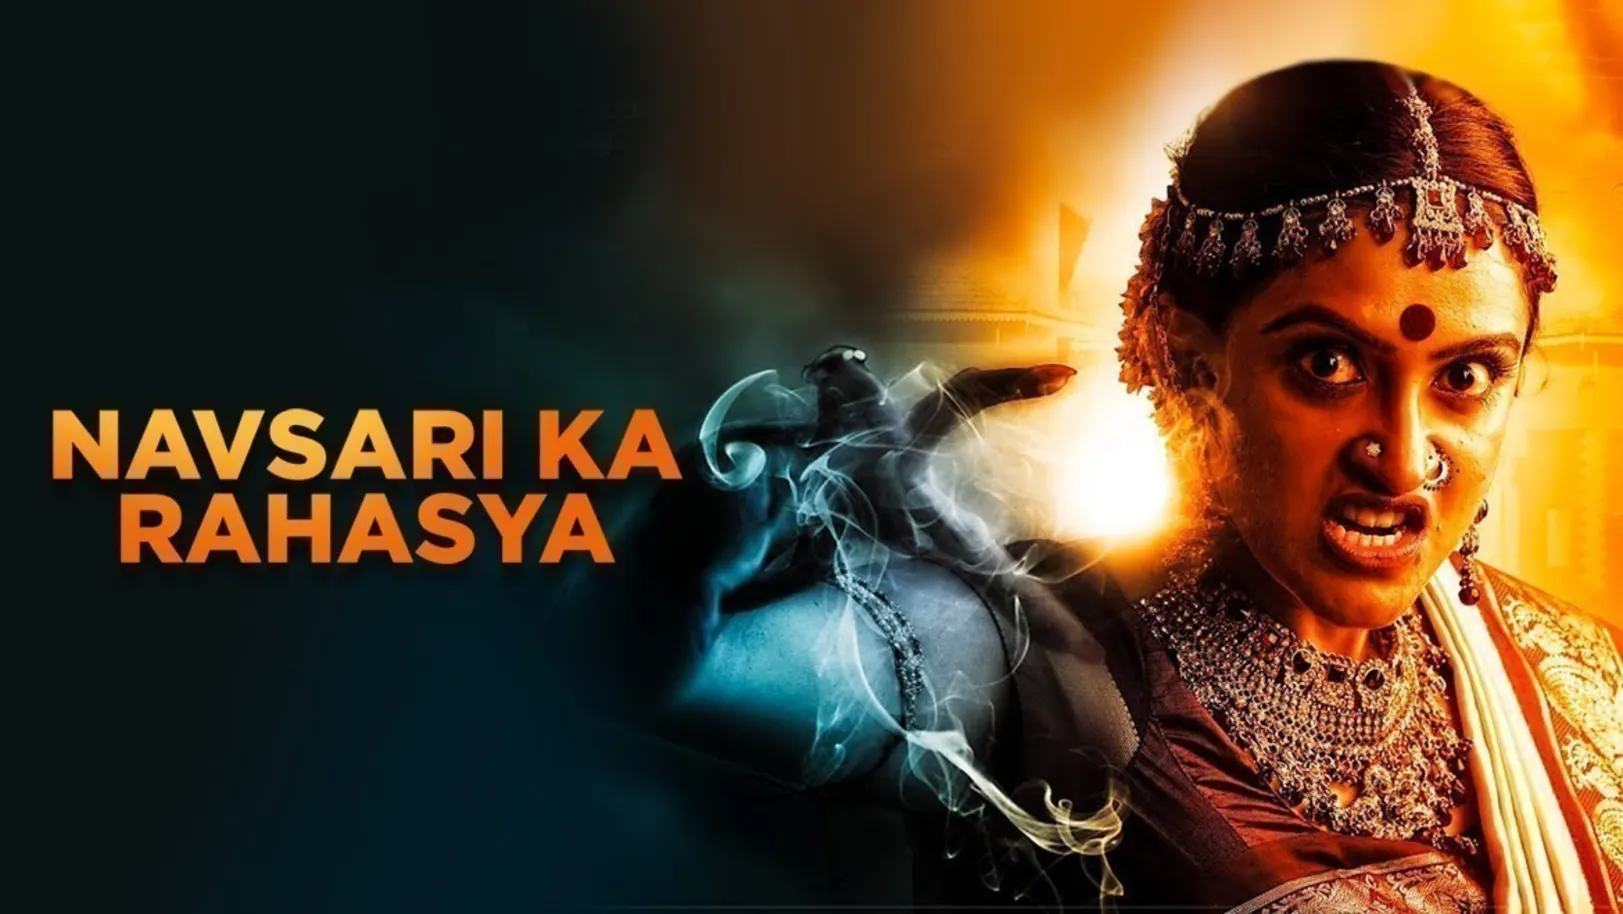 Navsari Ka Rahasya Movie